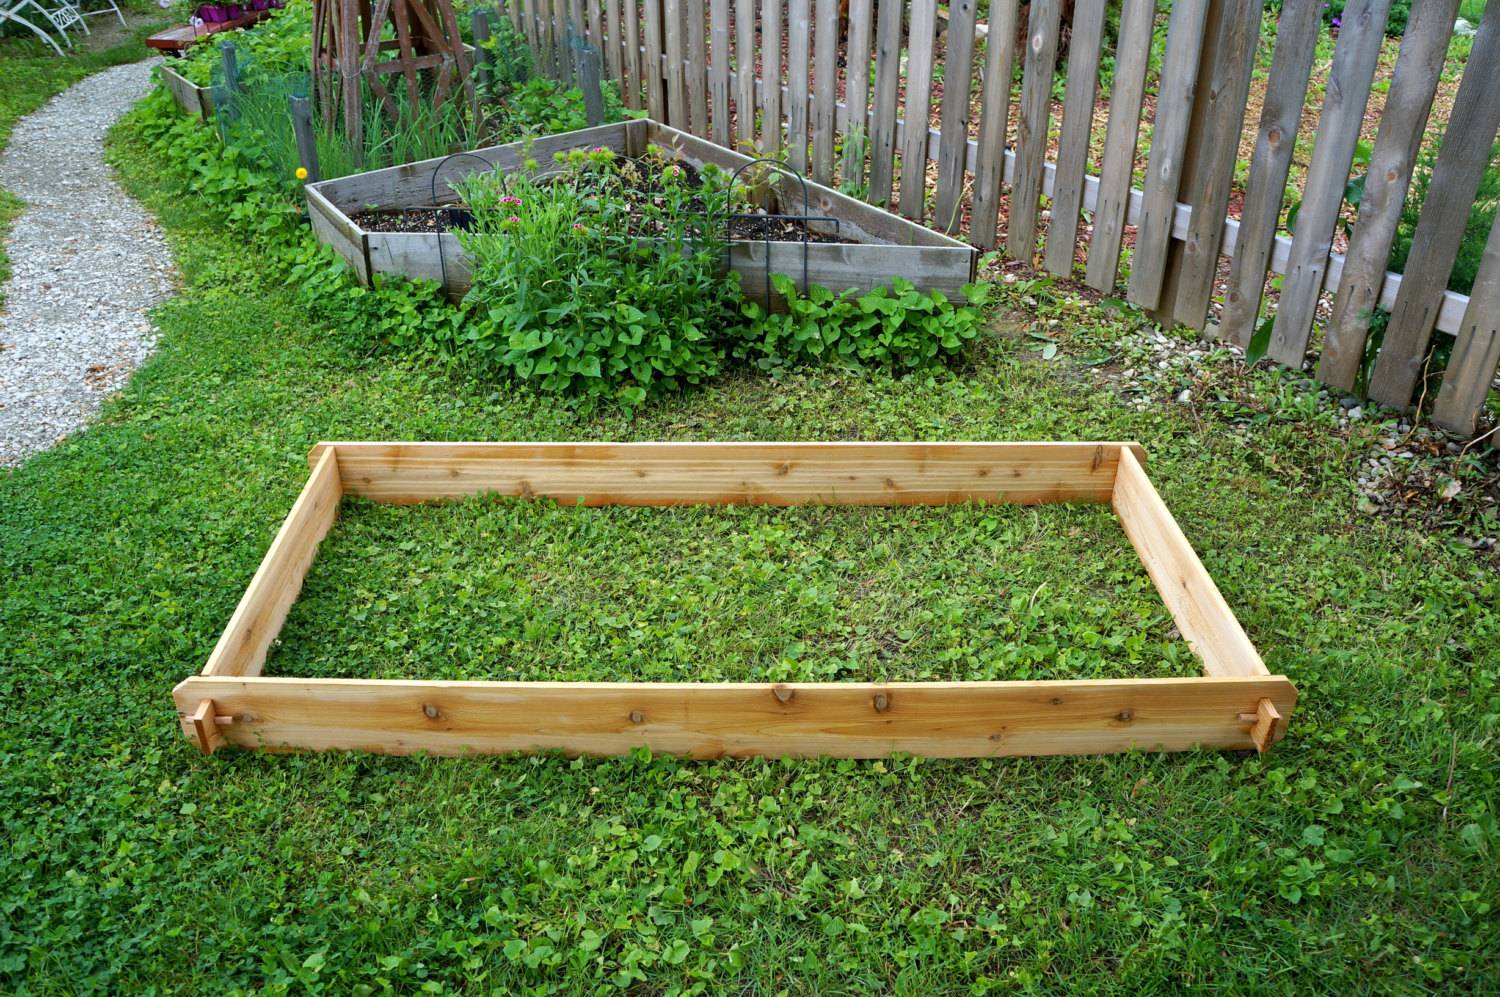 Bed Vegetable Gardening System